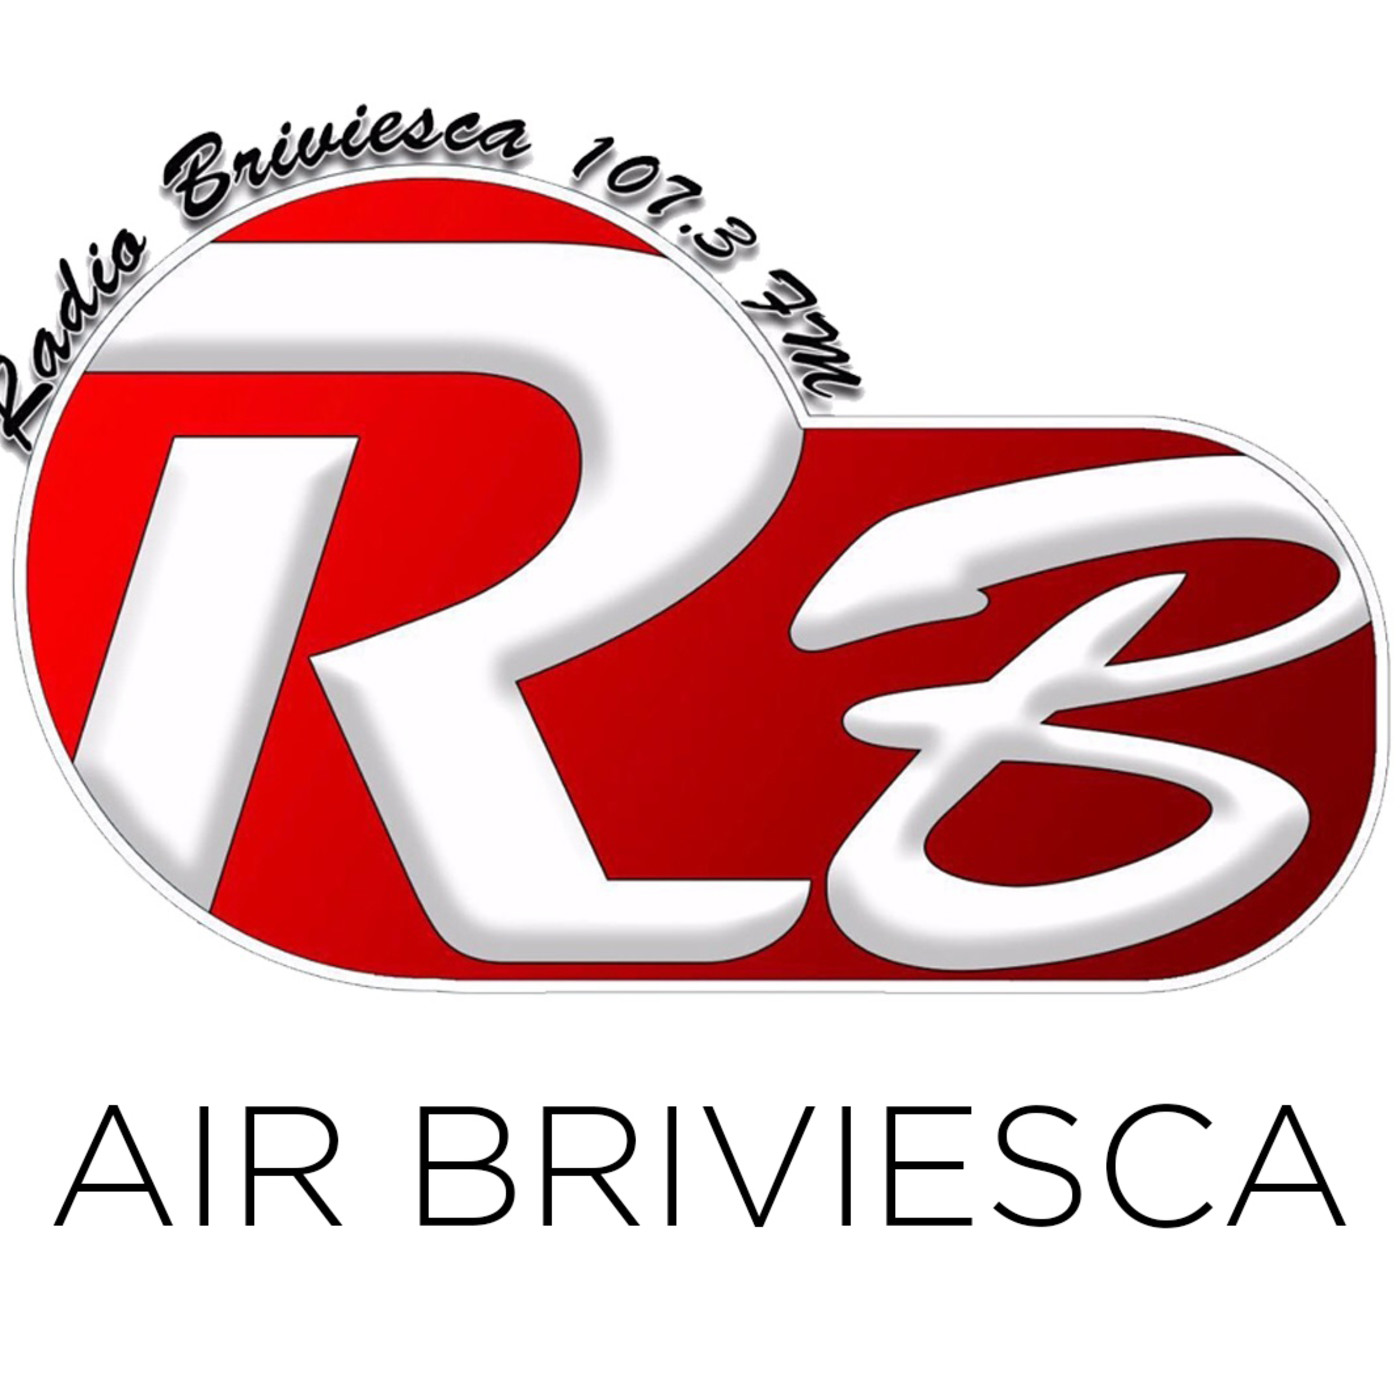 Air Briviesca 07/07/2018 (especial)